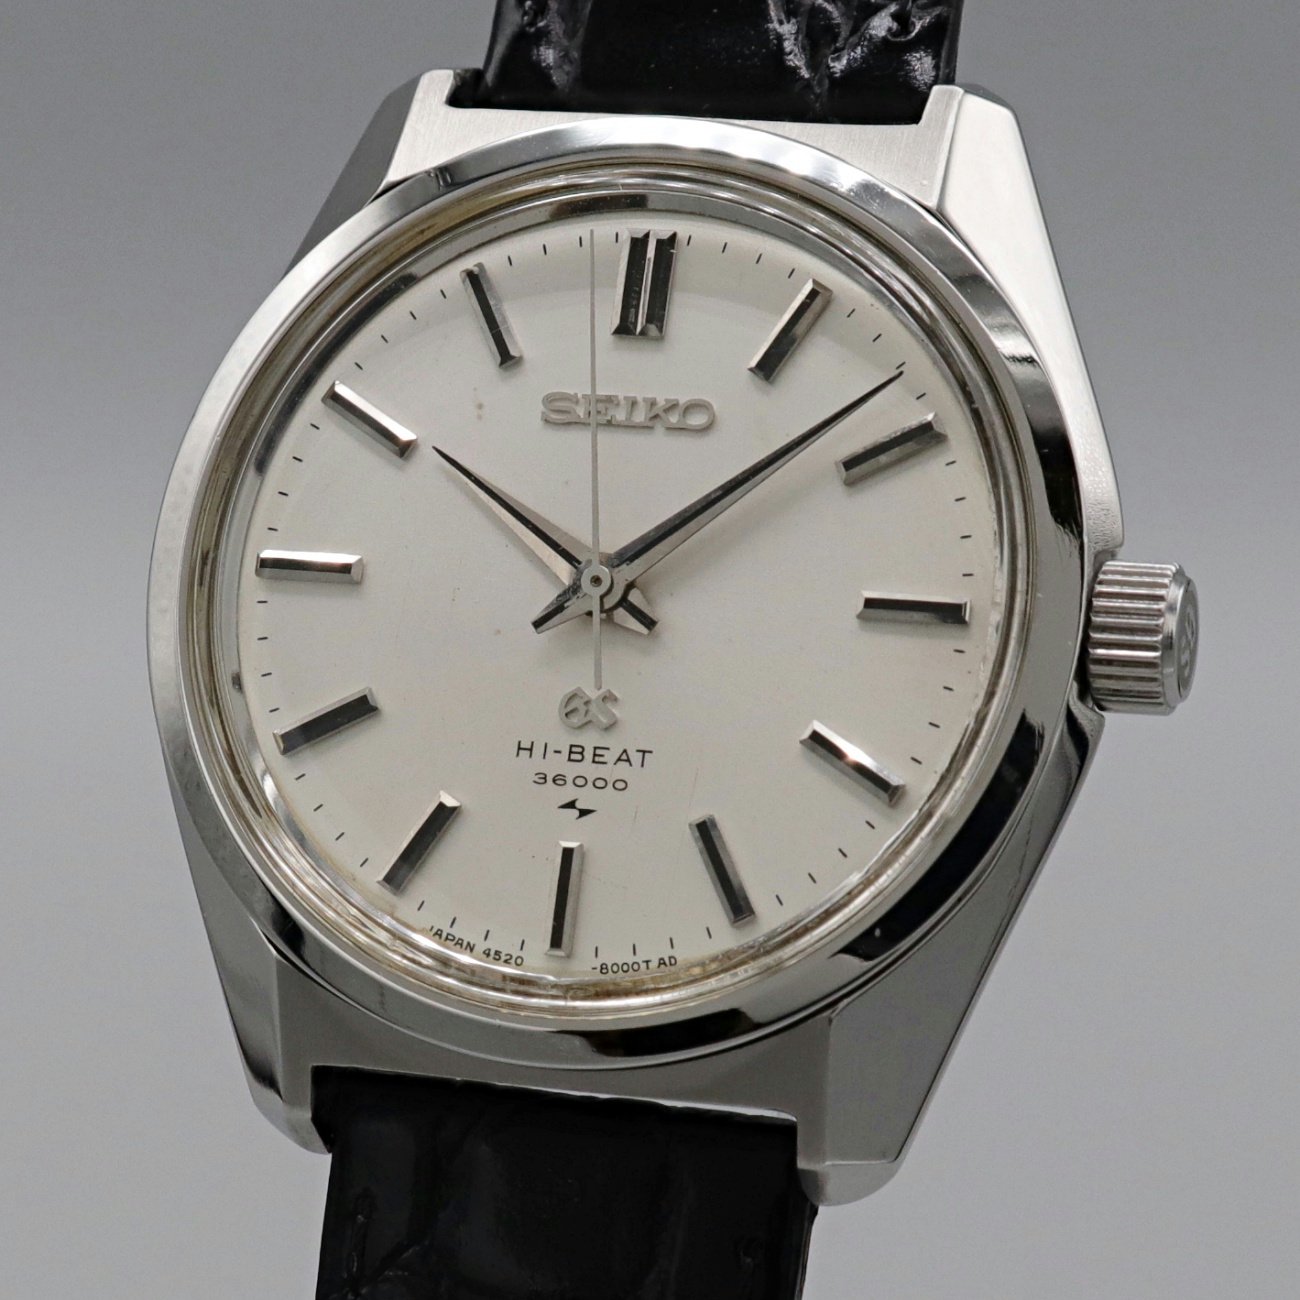 4522-8000❷グランドセイコー HI-BEAT SEIKO GS 36000 手巻き 時計